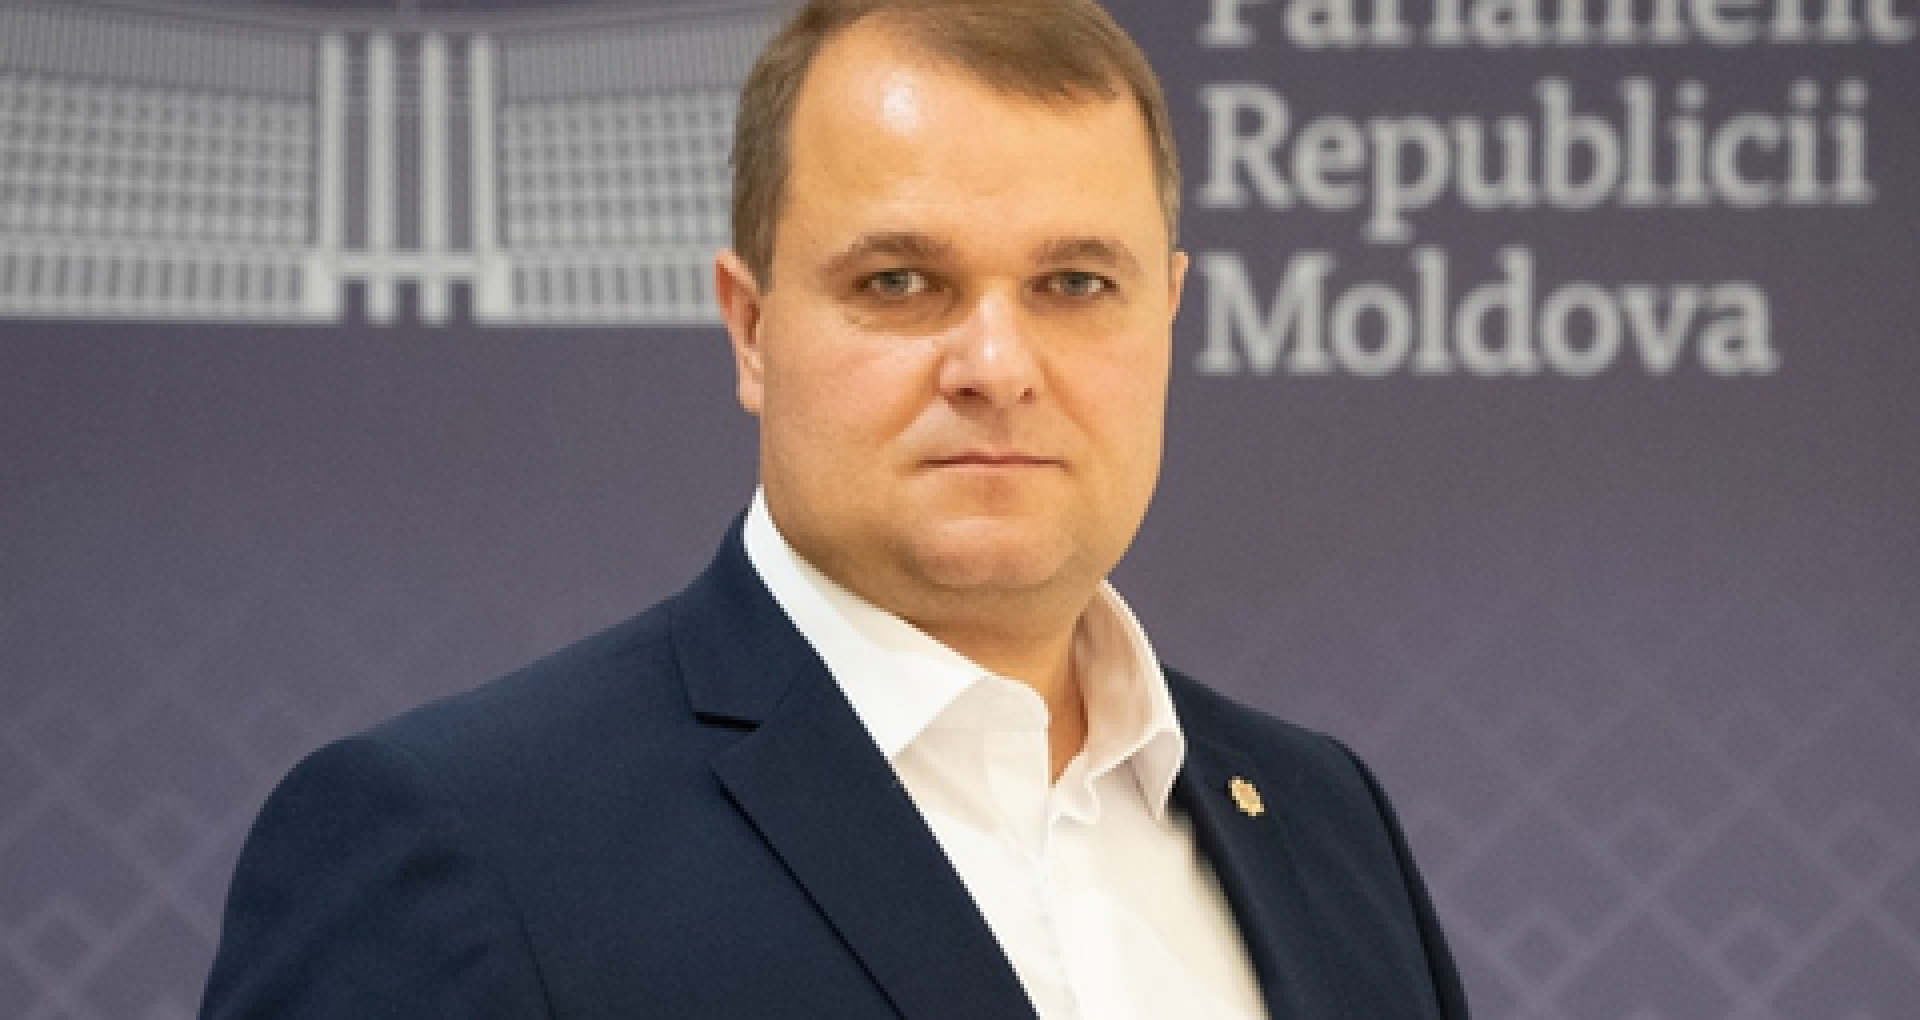 DOC/ Cum argumentează ANI incompatibilitatea deputatului socialist Alexandr Nesterovschi, care riscă să-și piardă mandatul – Ziarul de Gardă